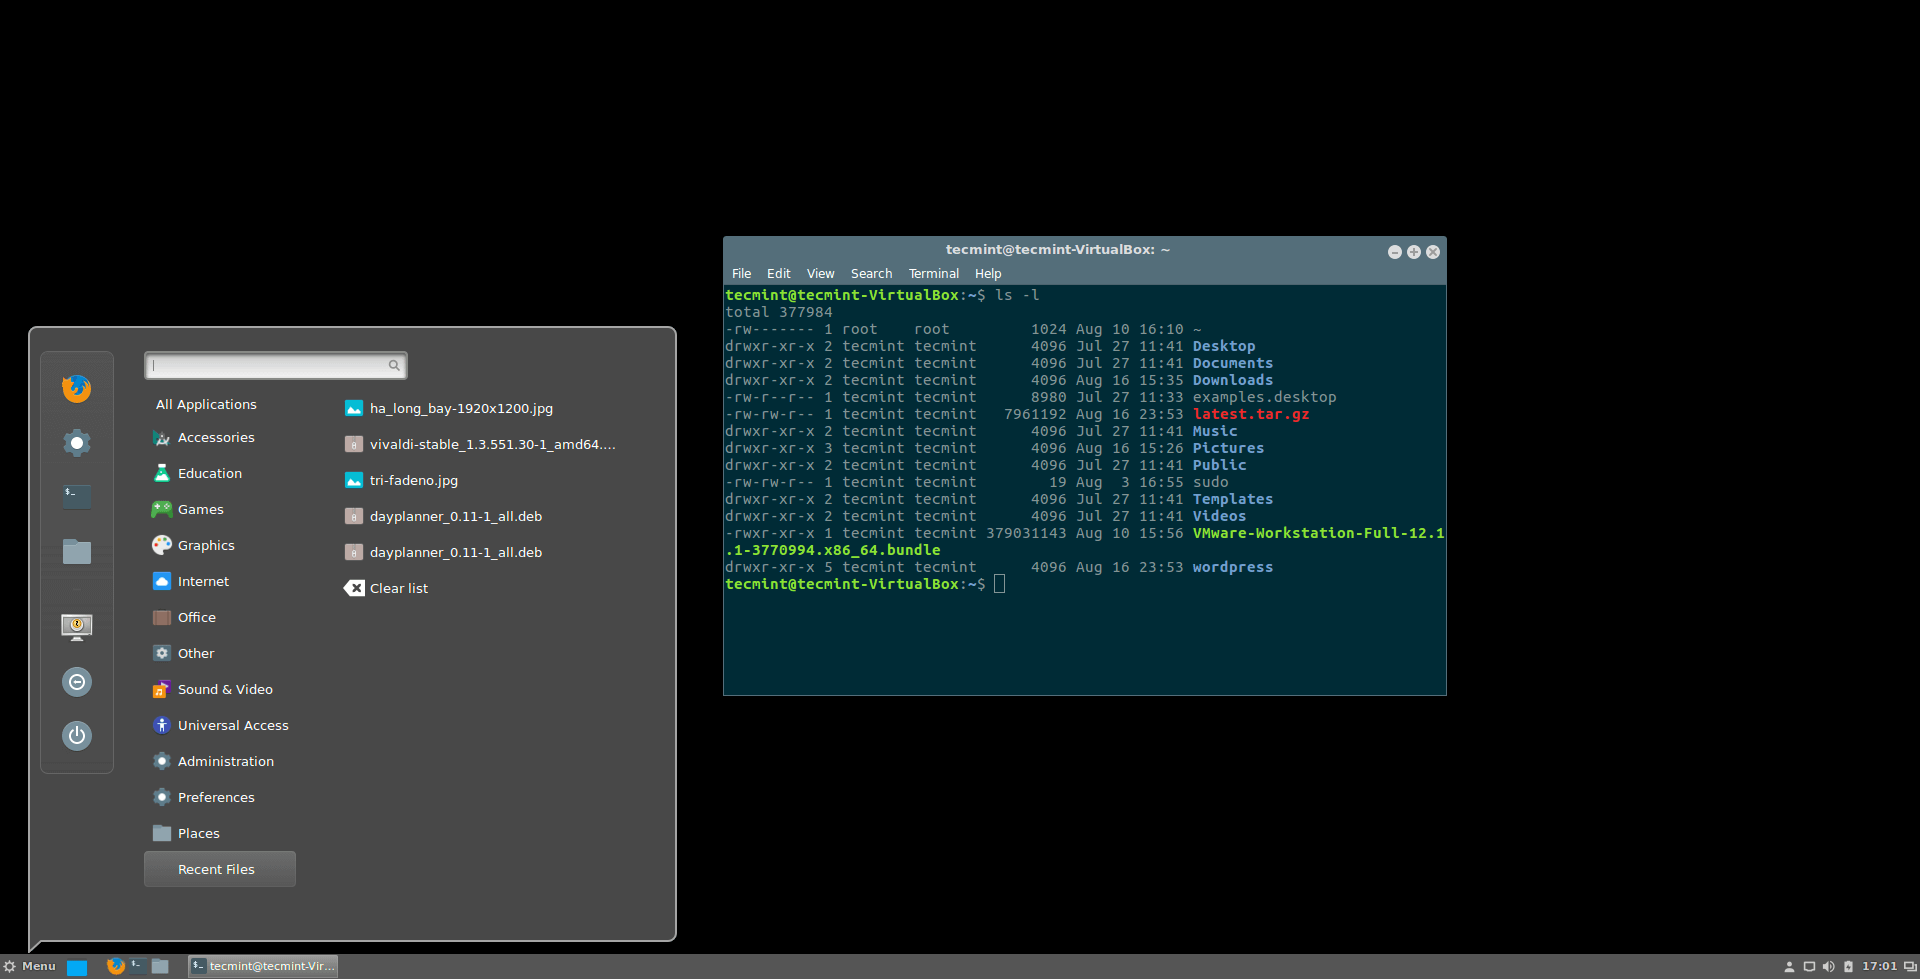 Cinnamon Desktop in Ubuntu 16.04